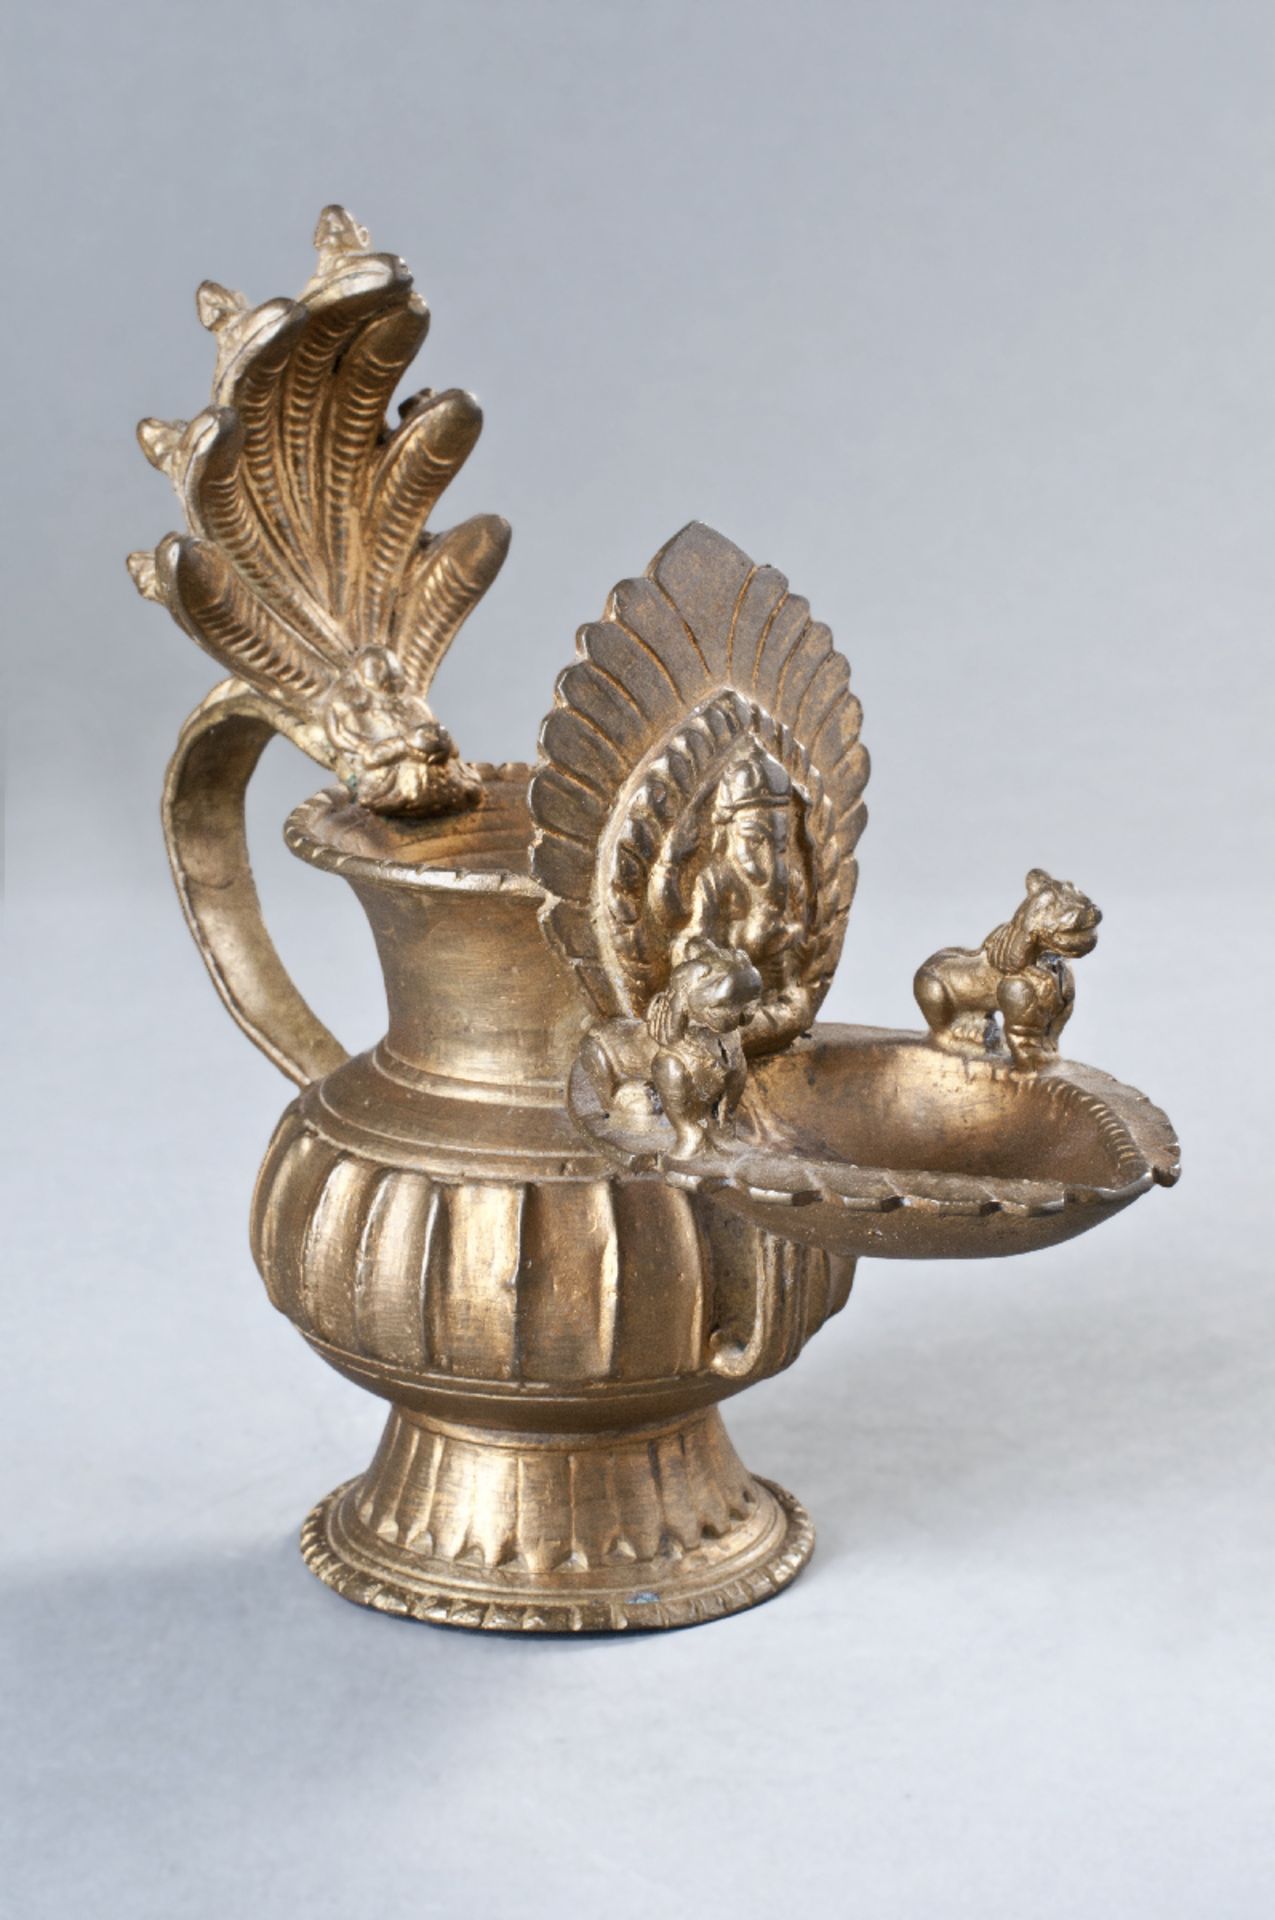 DEKORATIVES GEFÄß MIT NAGA
Bronze mit Lackvergoldung, Nepal, 20. Jh.Ausgestellter Fuß mit